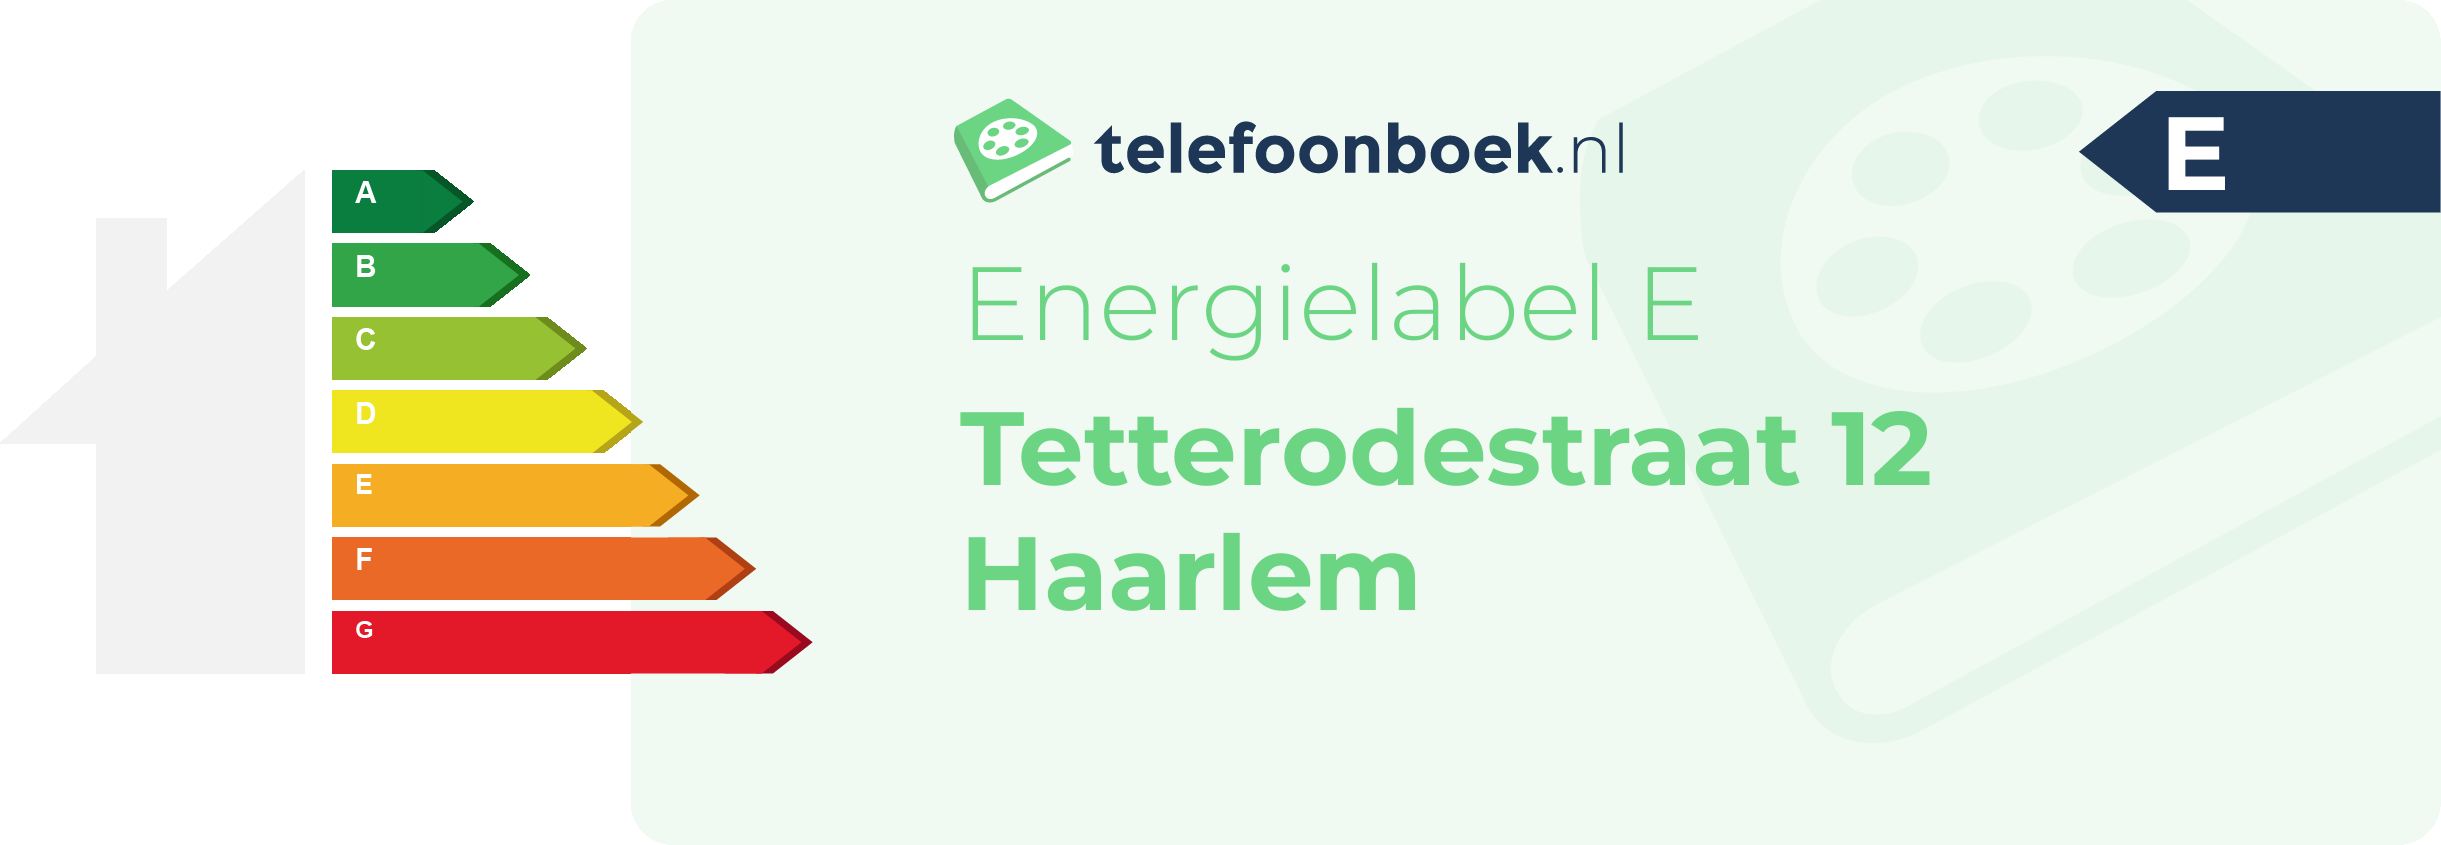 Energielabel Tetterodestraat 12 Haarlem